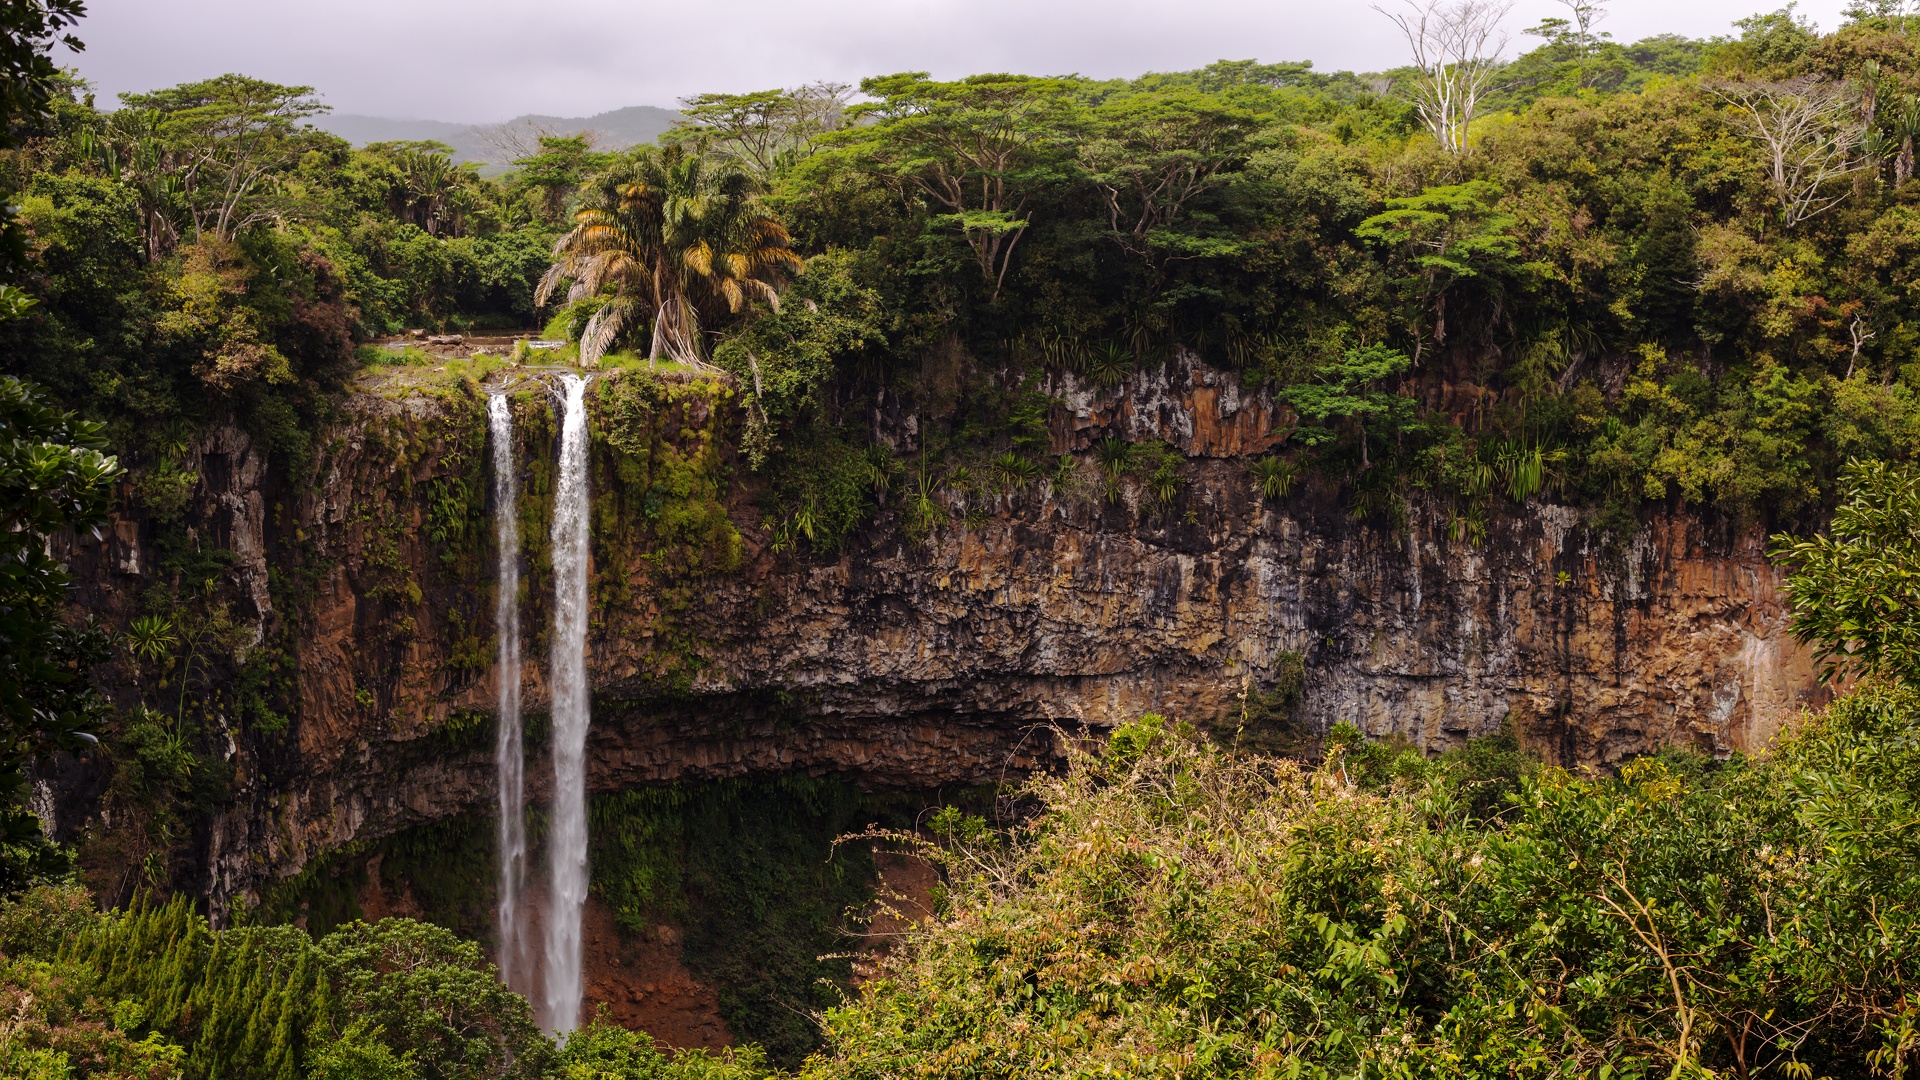 Cascade forêt tropicale - Ile de la Réunion.jpg